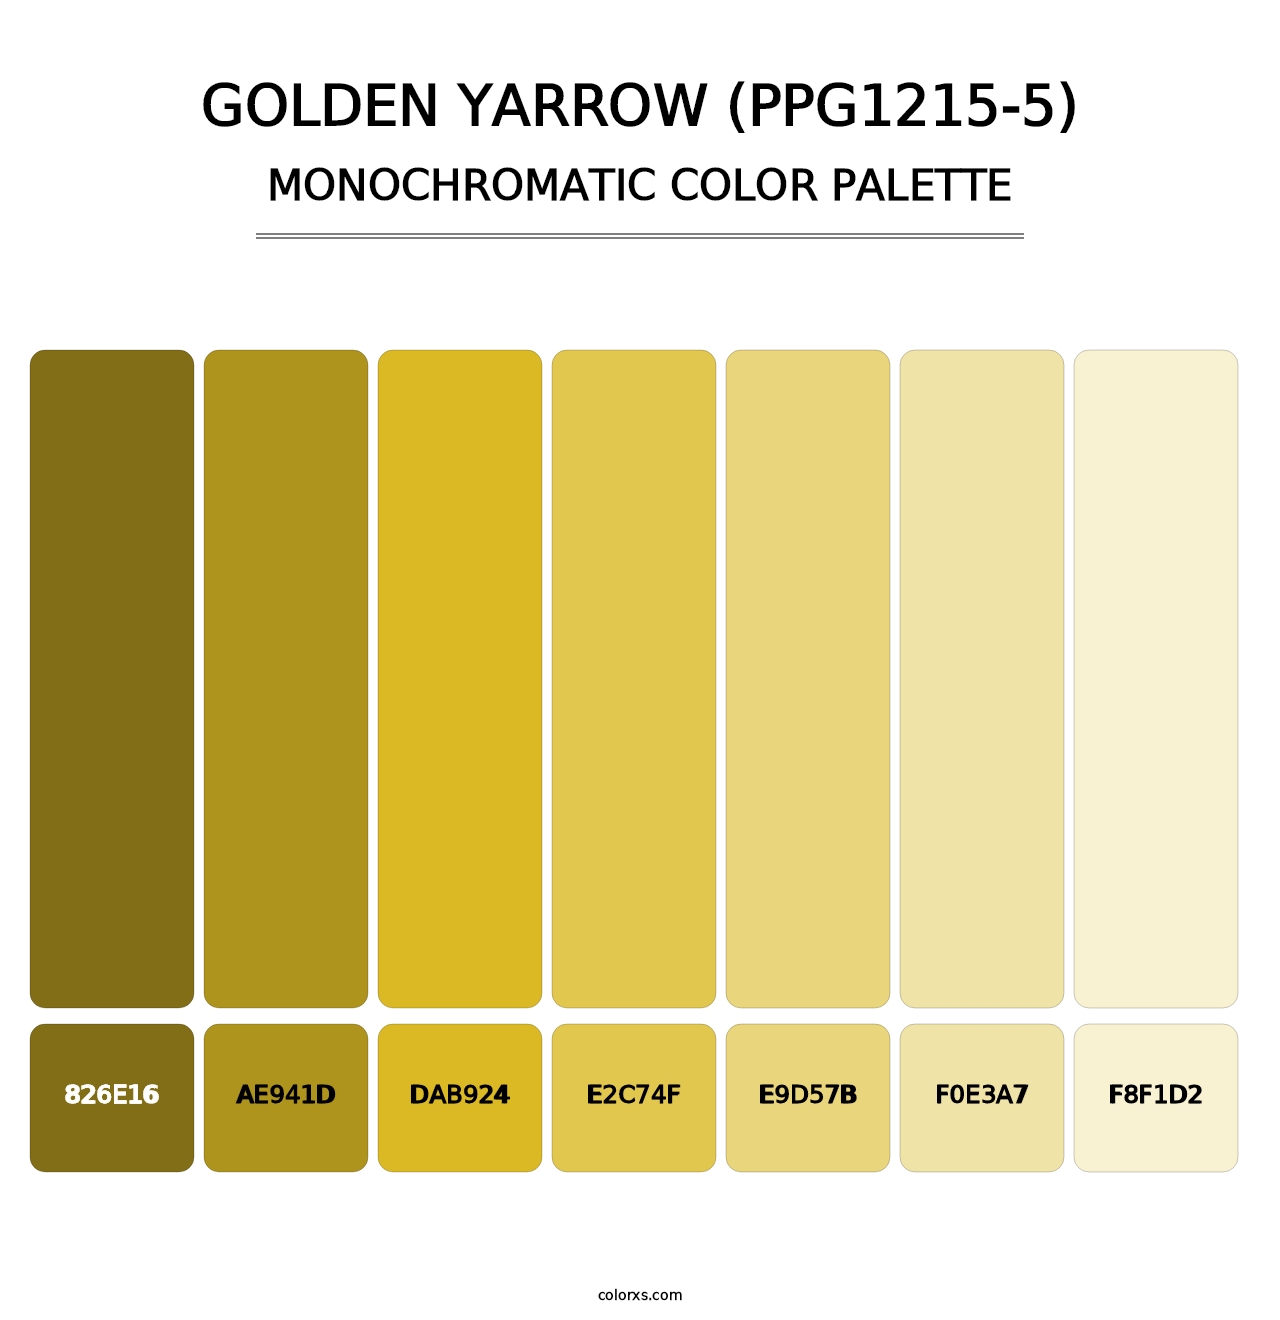 Golden Yarrow (PPG1215-5) - Monochromatic Color Palette